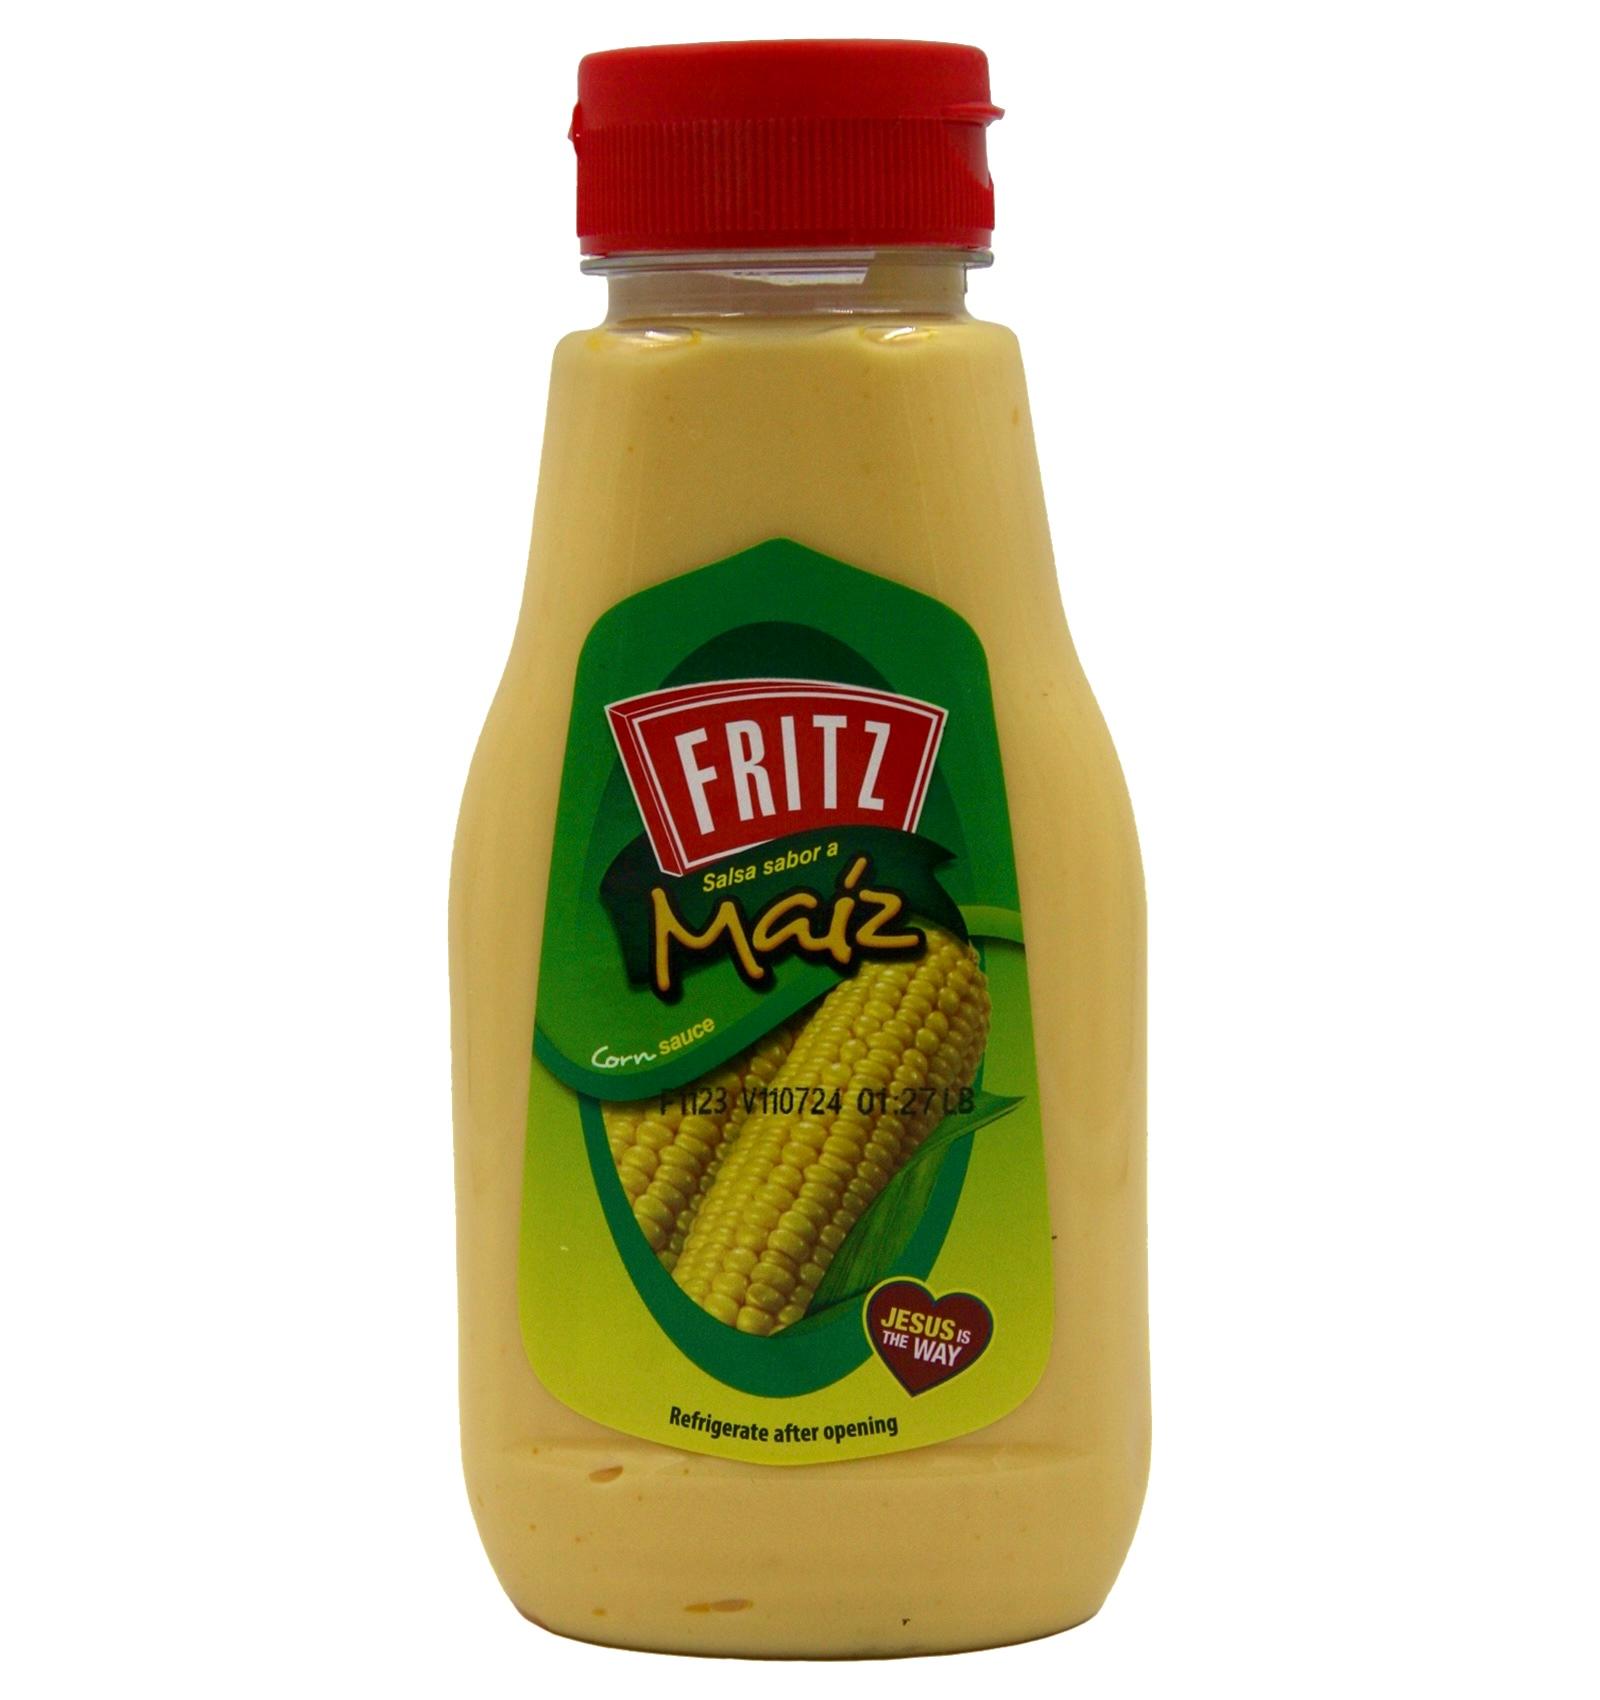 Salsa sabor a maíz Fritz